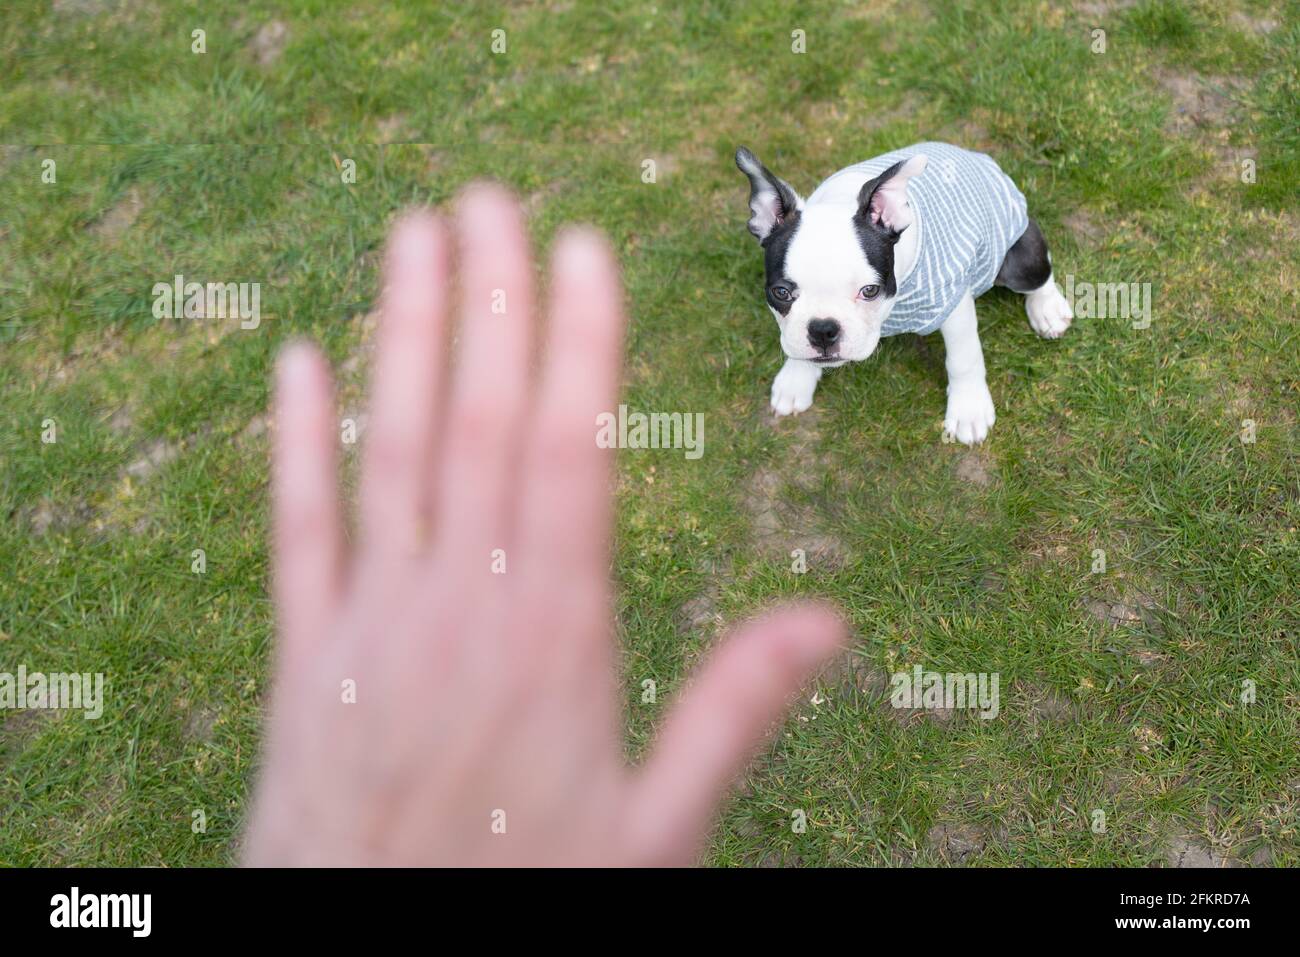 Un simpatico cucciolo di Boston Terrier che indossa un jumper seduto sull'erba guardando una mano umana che gestiva un comando di stop o di soggiorno durante una sessione di allenamento. Foto Stock